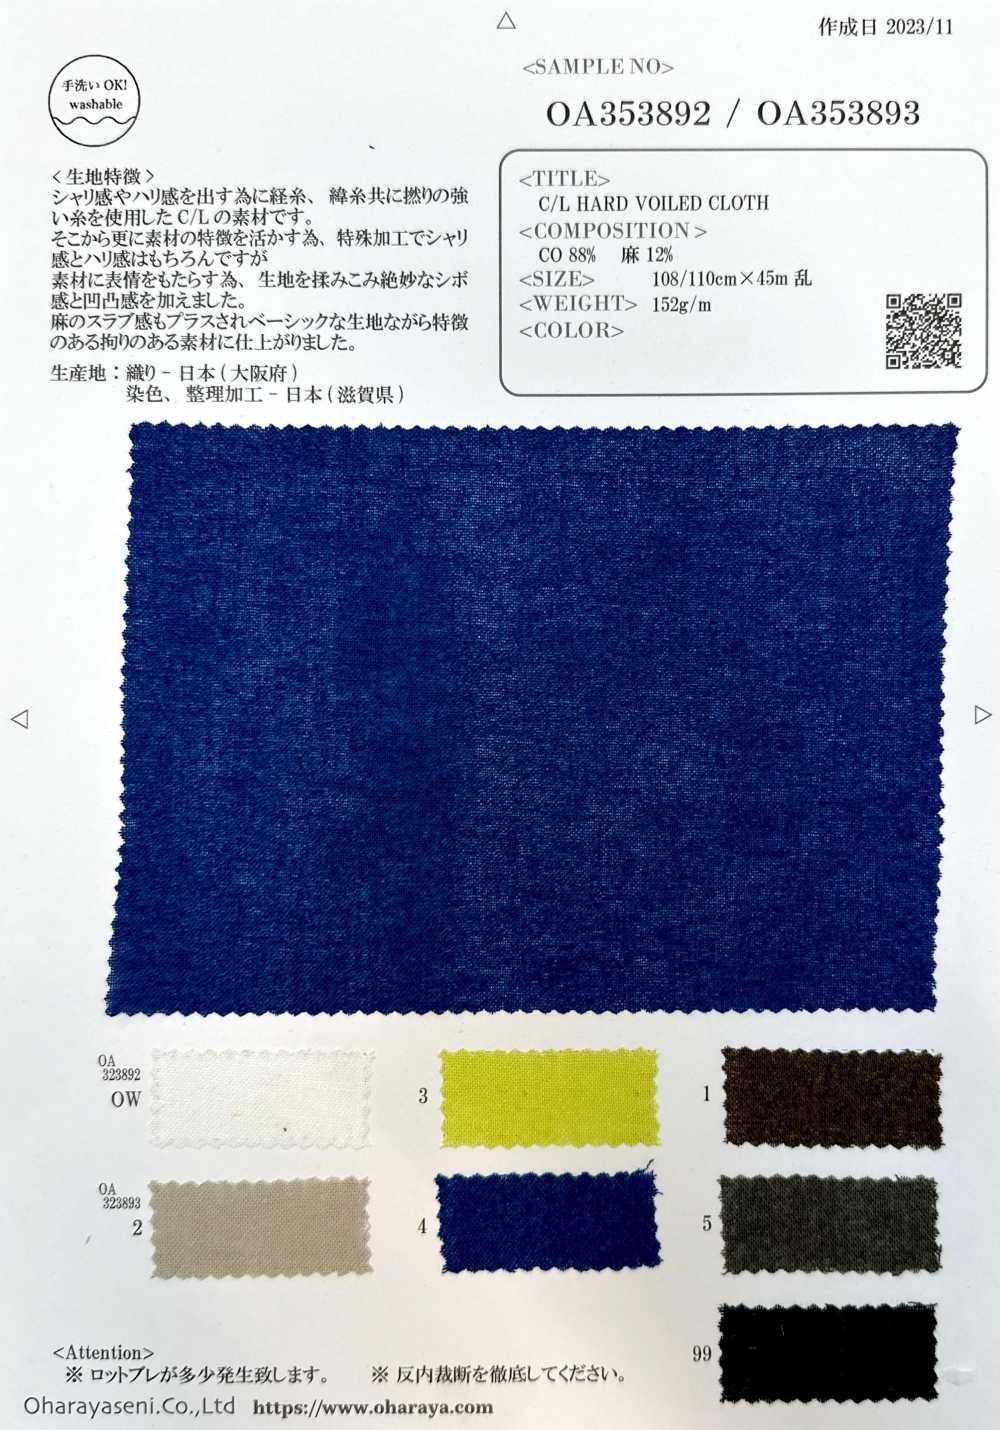 OA353893 C/L HARD VOILED CLOTH[Textile / Fabric] Oharayaseni